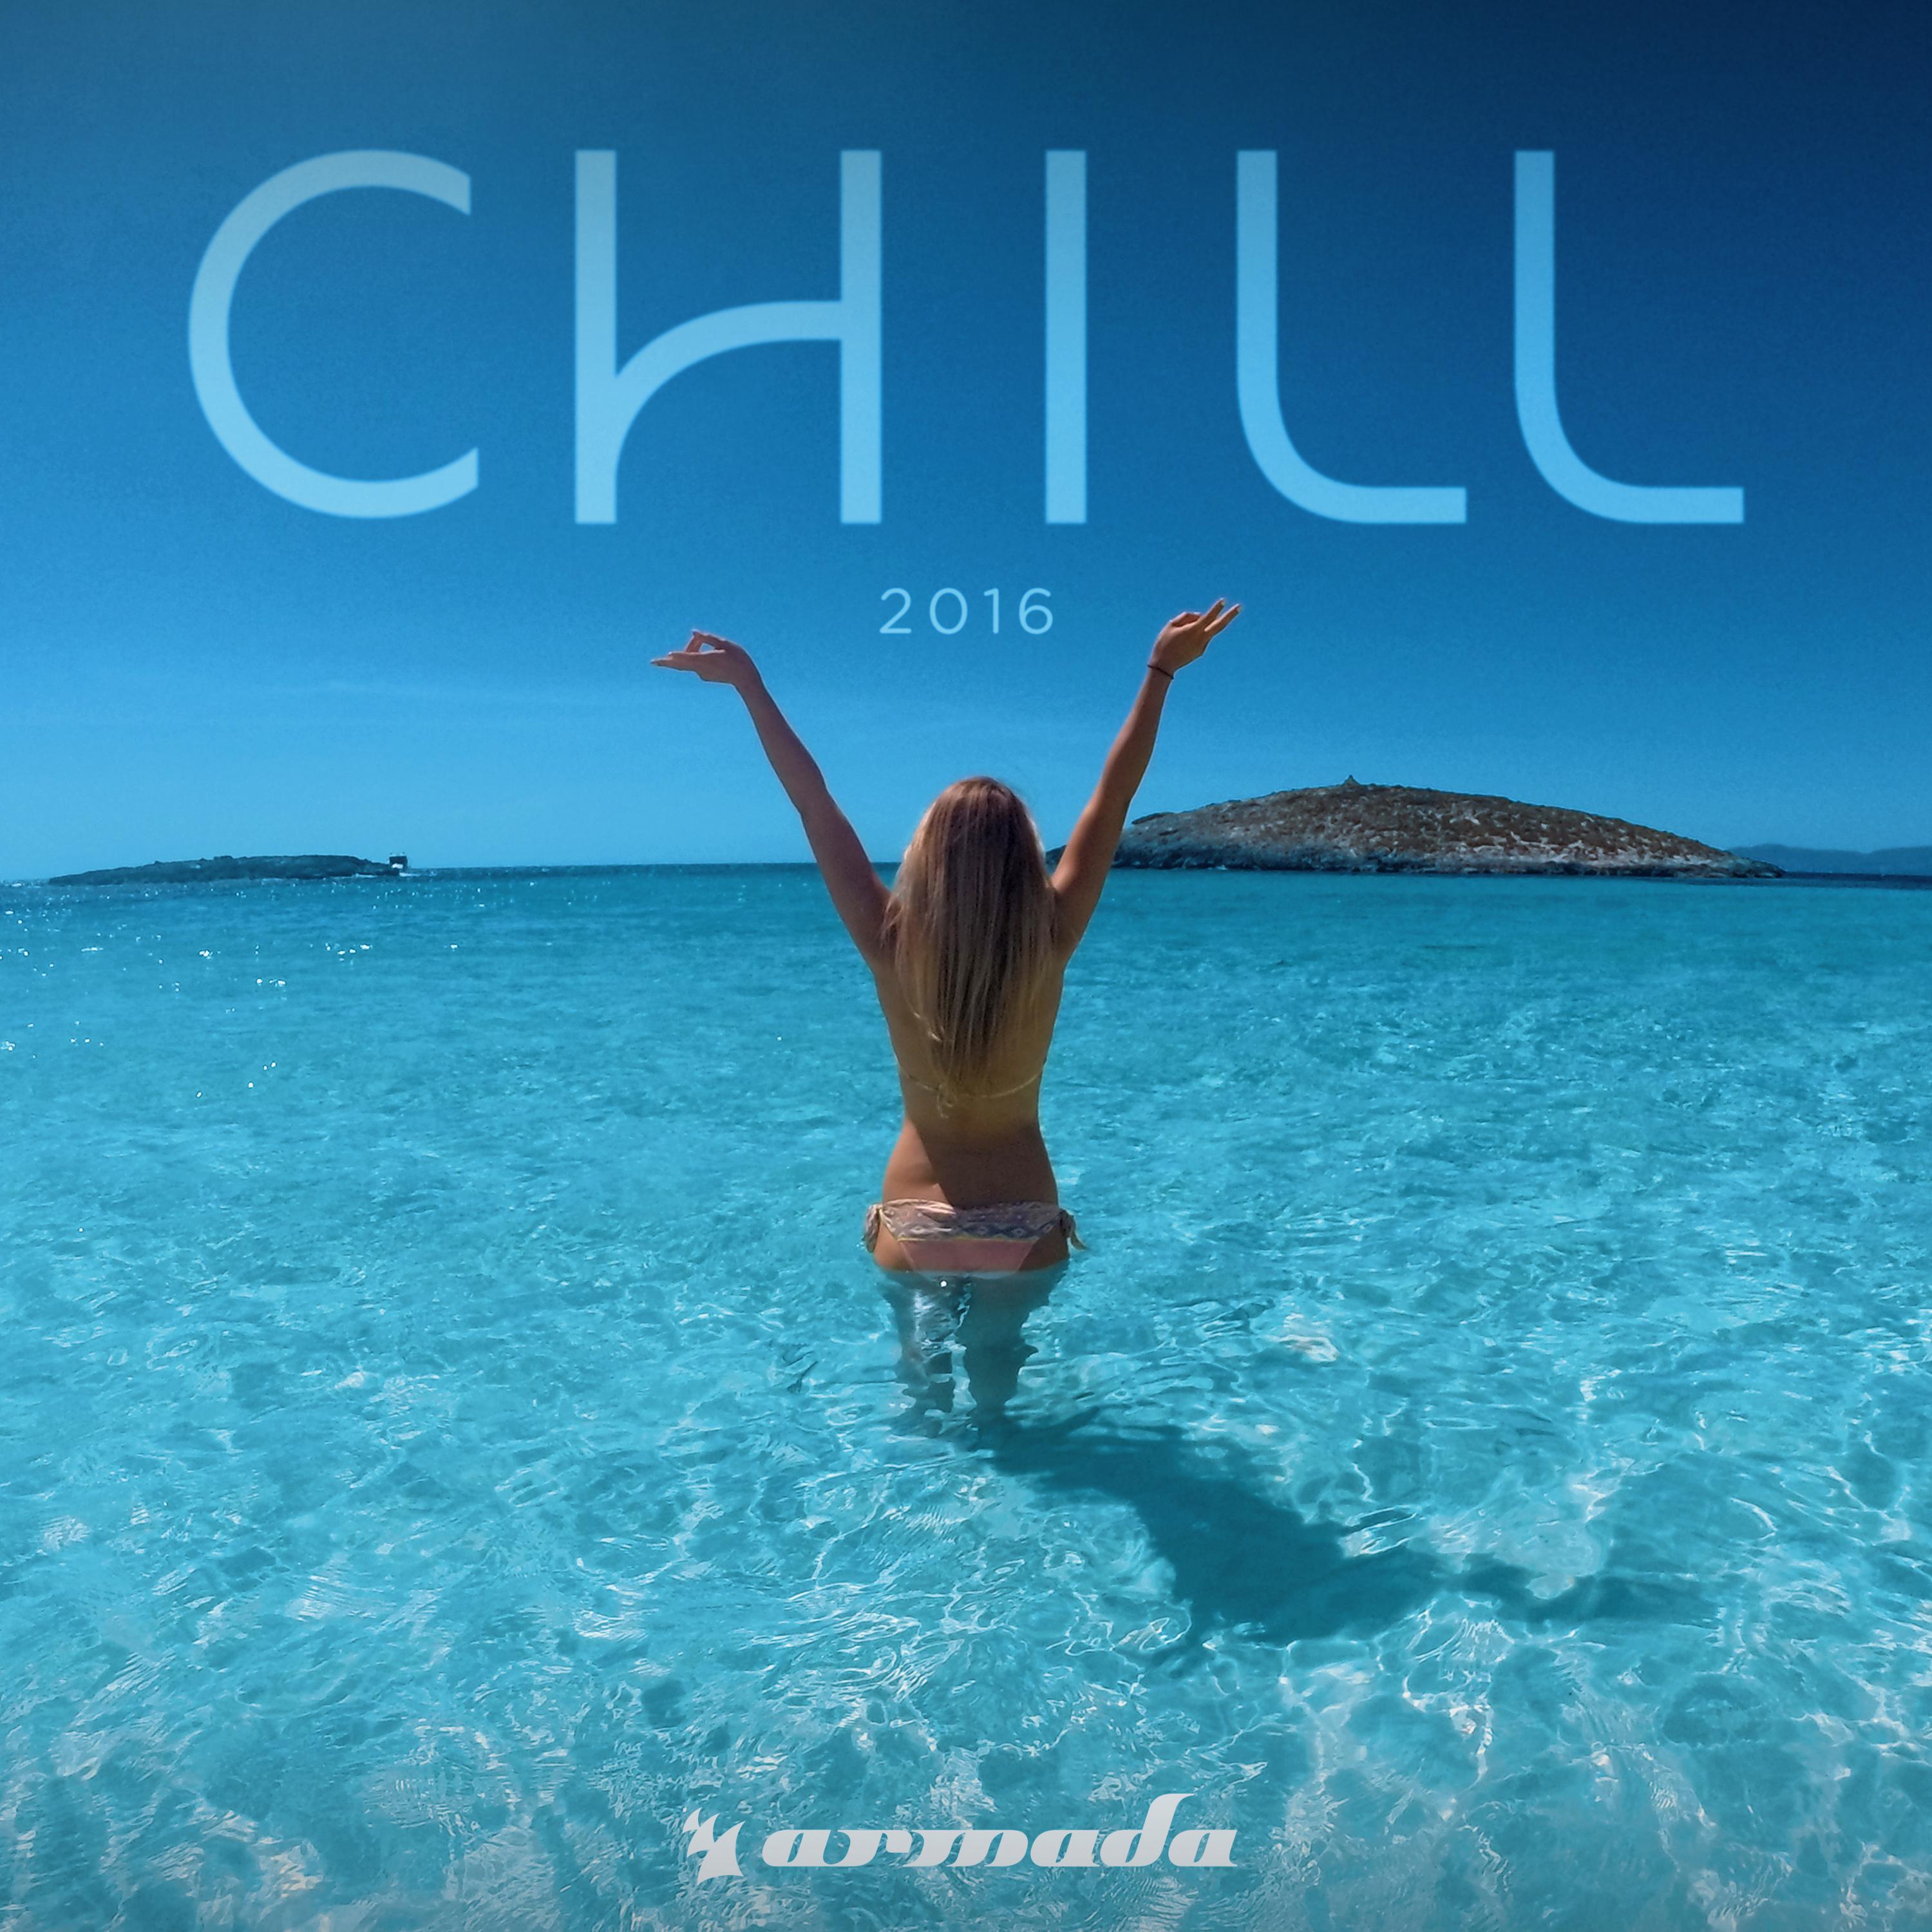 Ice歌词 歌手Pablo Nouvelle-专辑Armada Chill 2016-单曲《Ice》LRC歌词下载